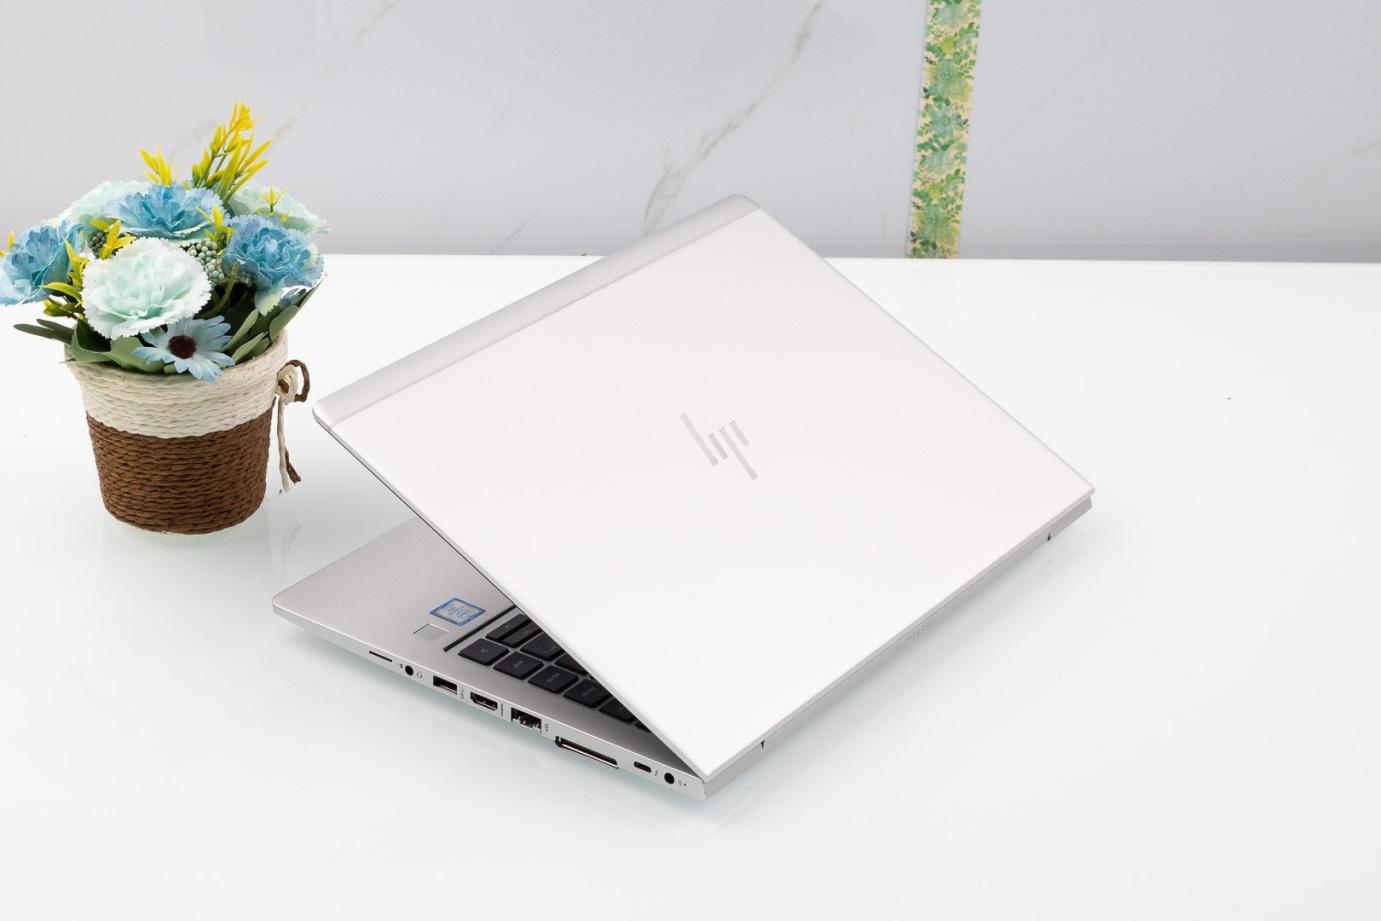 Laptop HP Elitebook 840G5 Cũ Chính Hãng, Bảo Hành 1 Năm